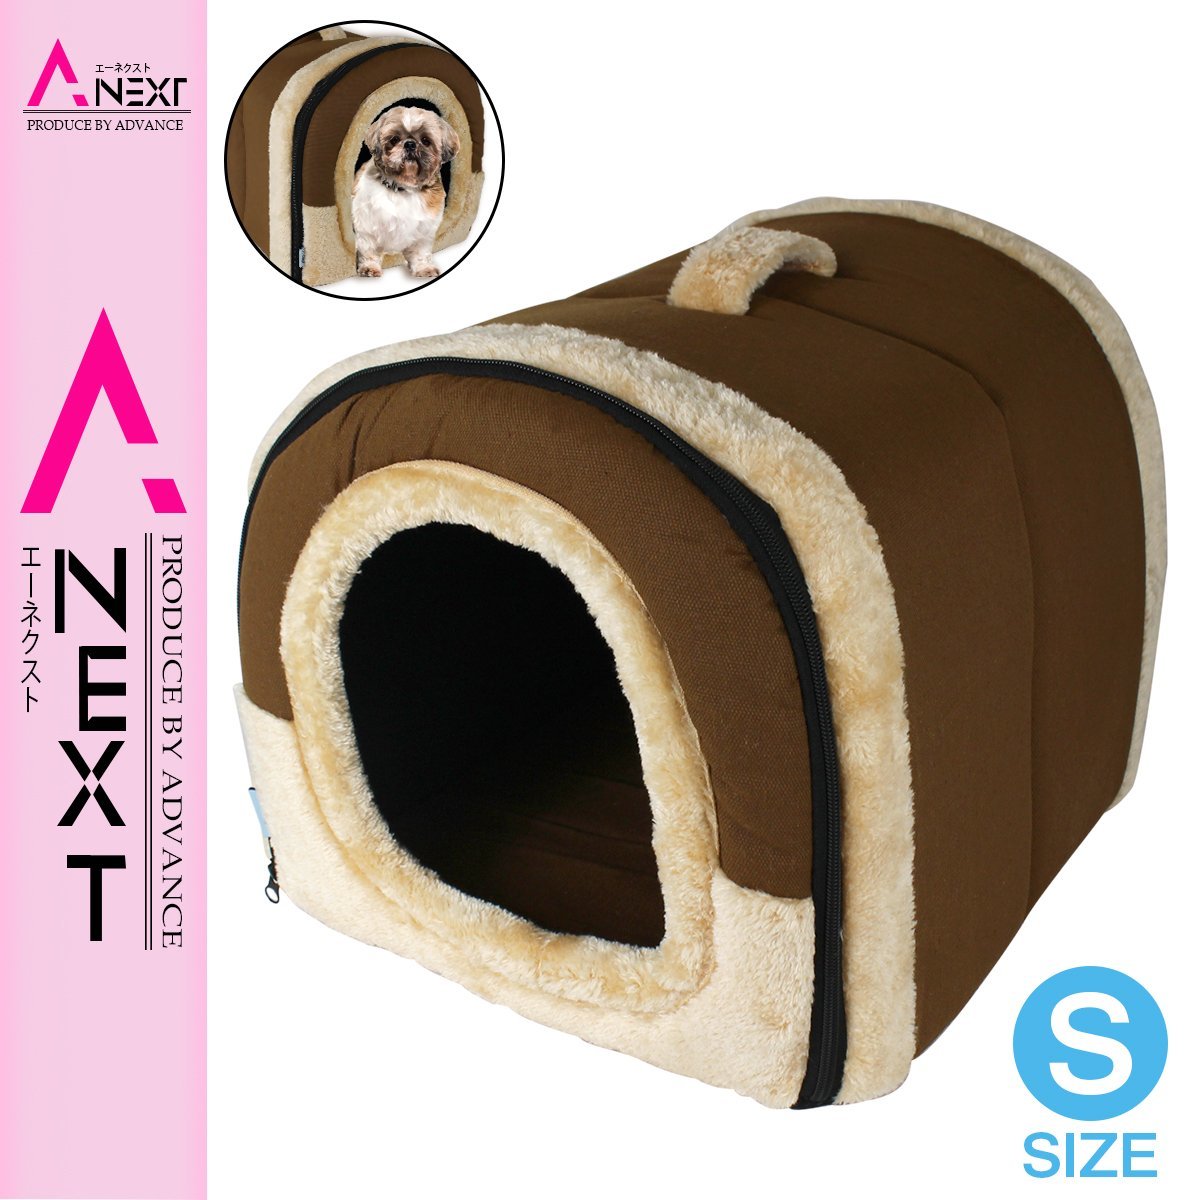 2way仕様のドーム型ペットハウス 折りたたみ式 ペットベッド Sサイズ ブラウン 茶色 犬猫用 隠れ家 防寒対策 ソファー クッション 安価